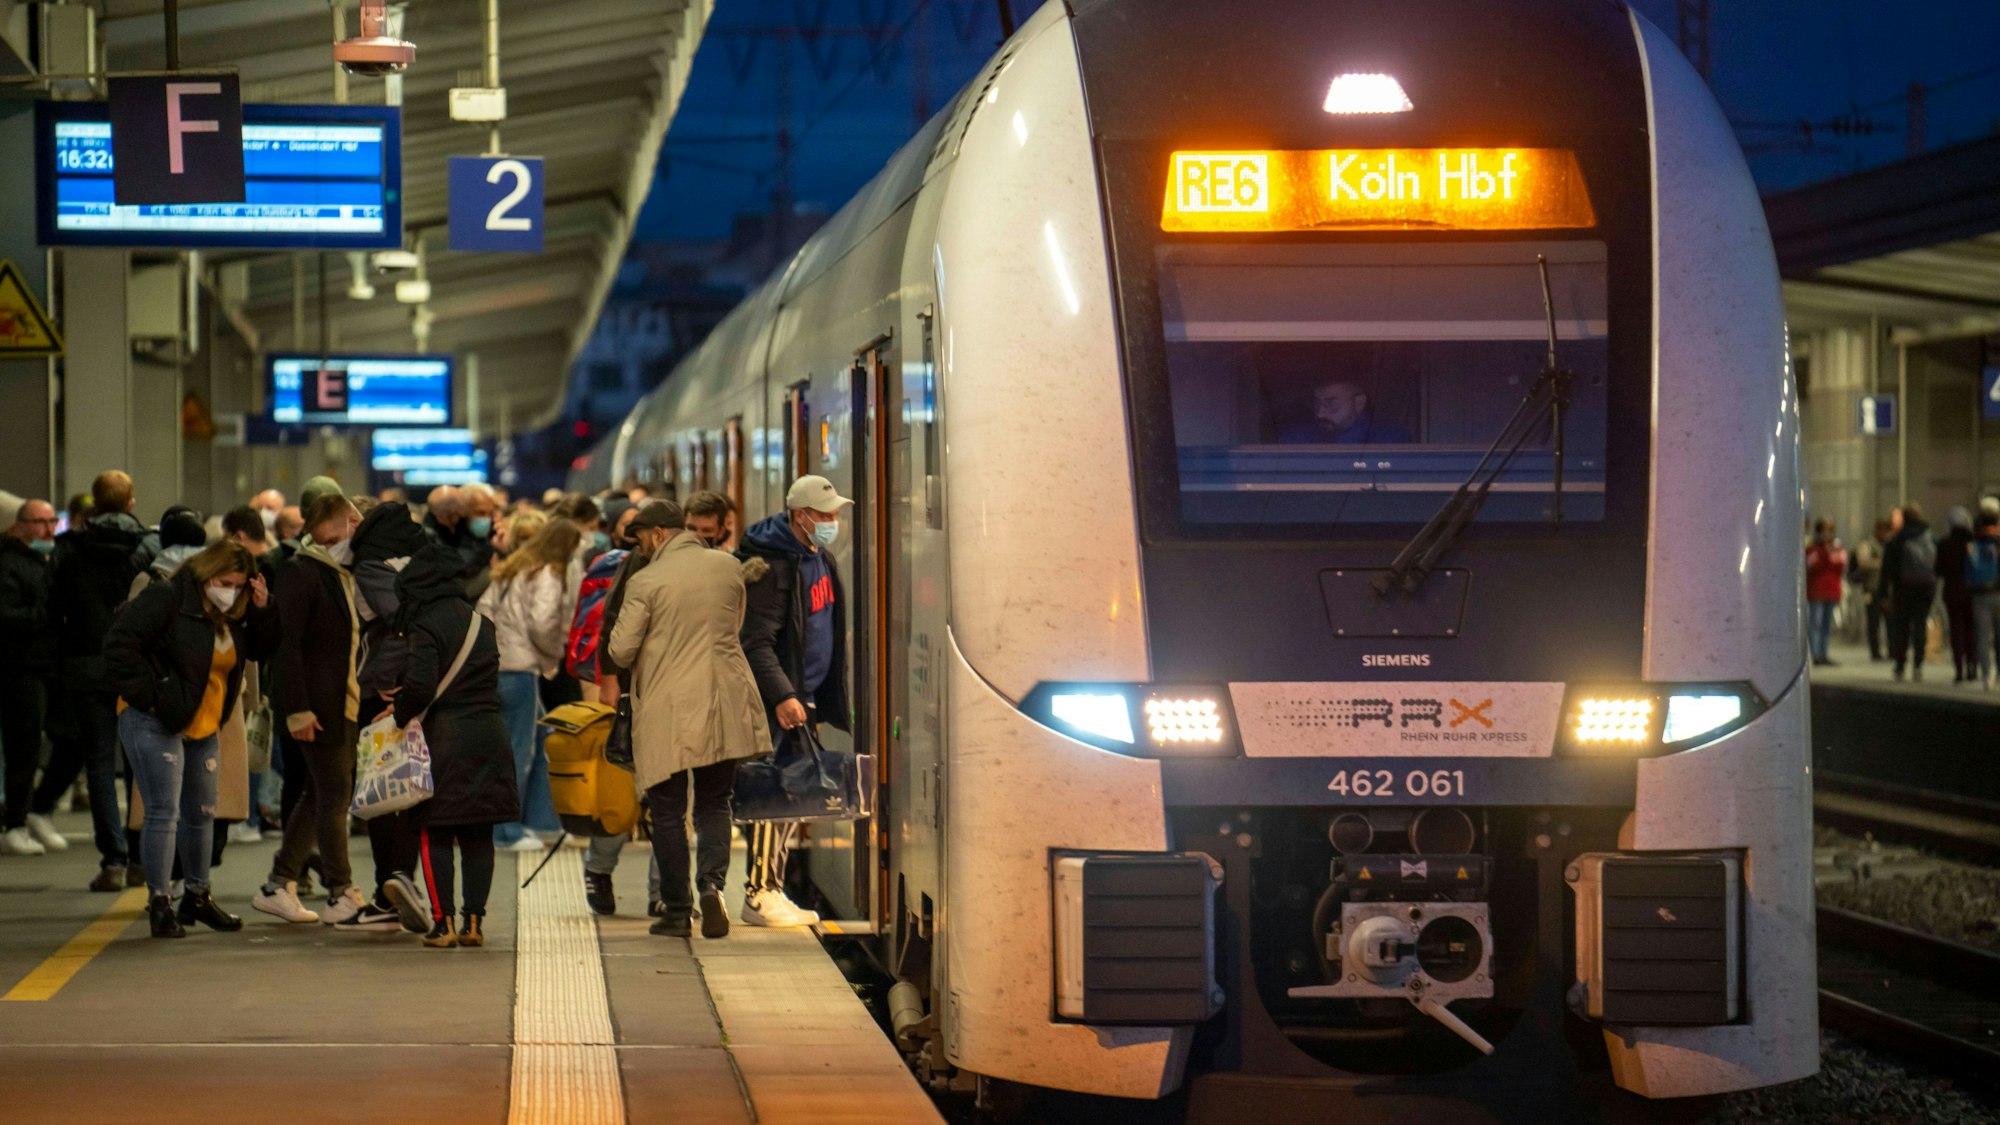 Bahnhof, Nahverkehrszug, Regionalexpress RE6, RRX, nach Köln, fährt ein, Fahrgäste, Essen, NRW, Deutschland, Zugverkehr